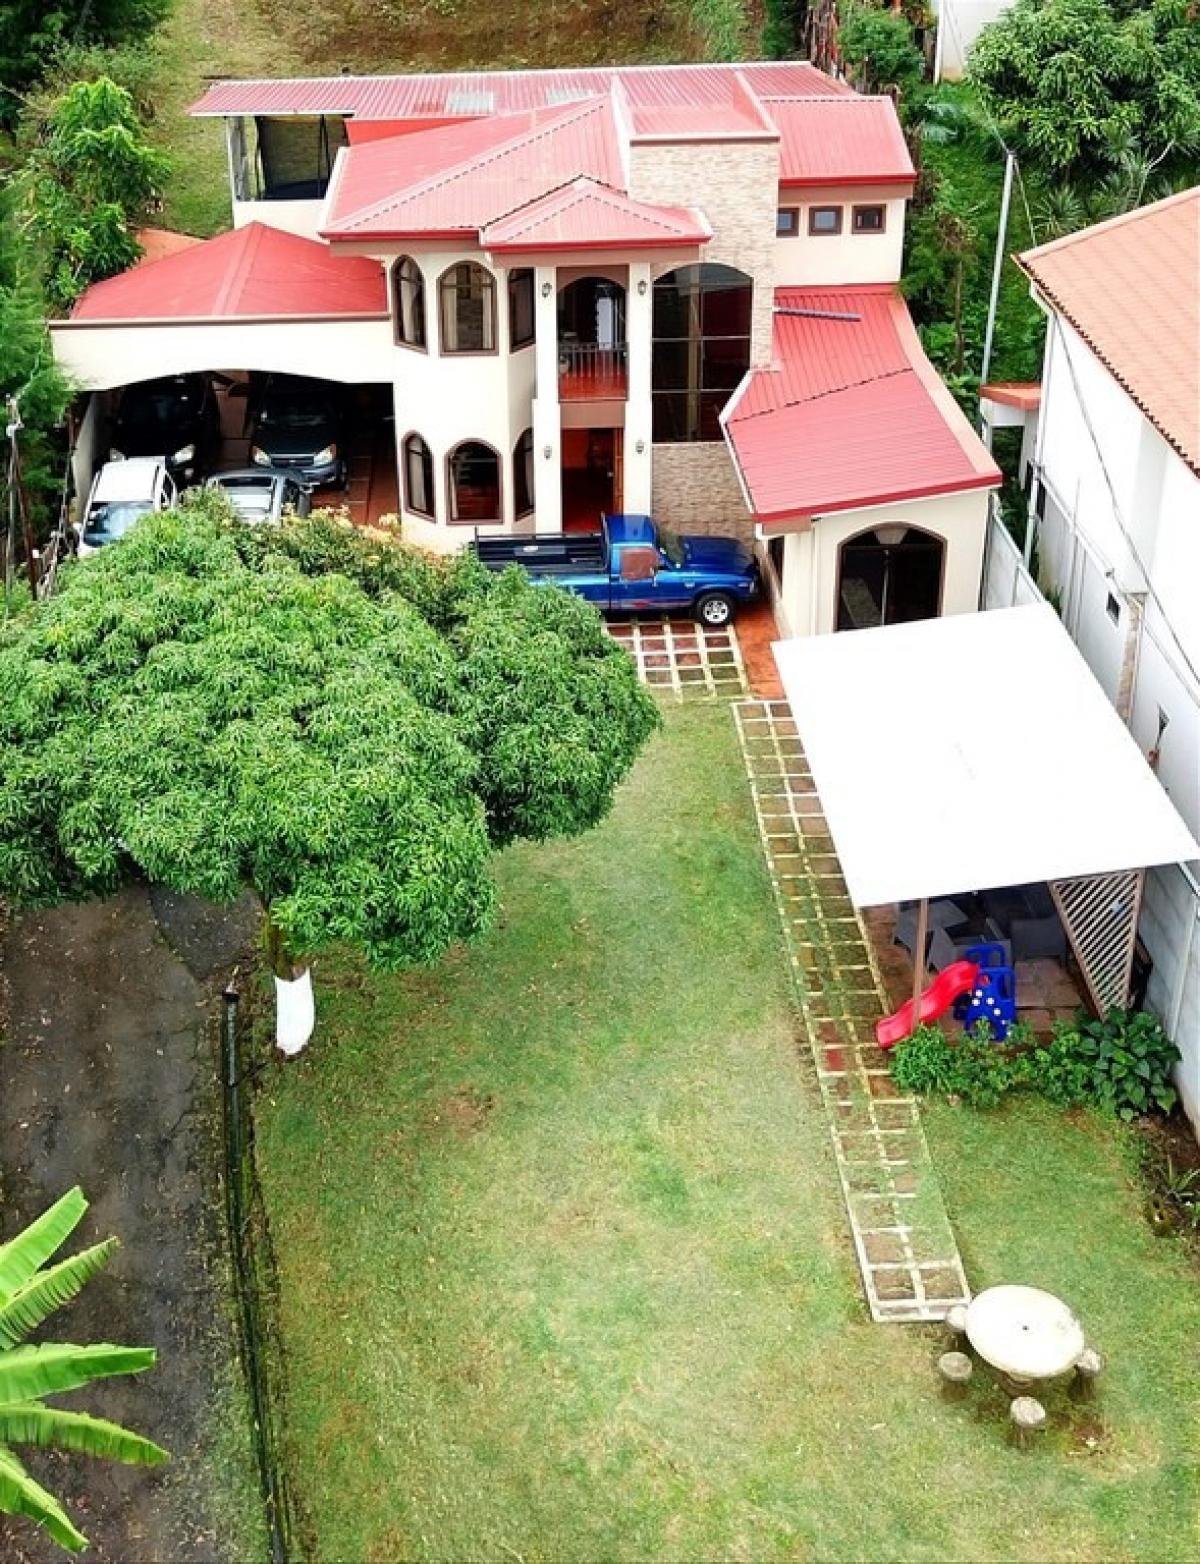 Picture of Home For Sale in Grecia, Alajuela, Costa Rica